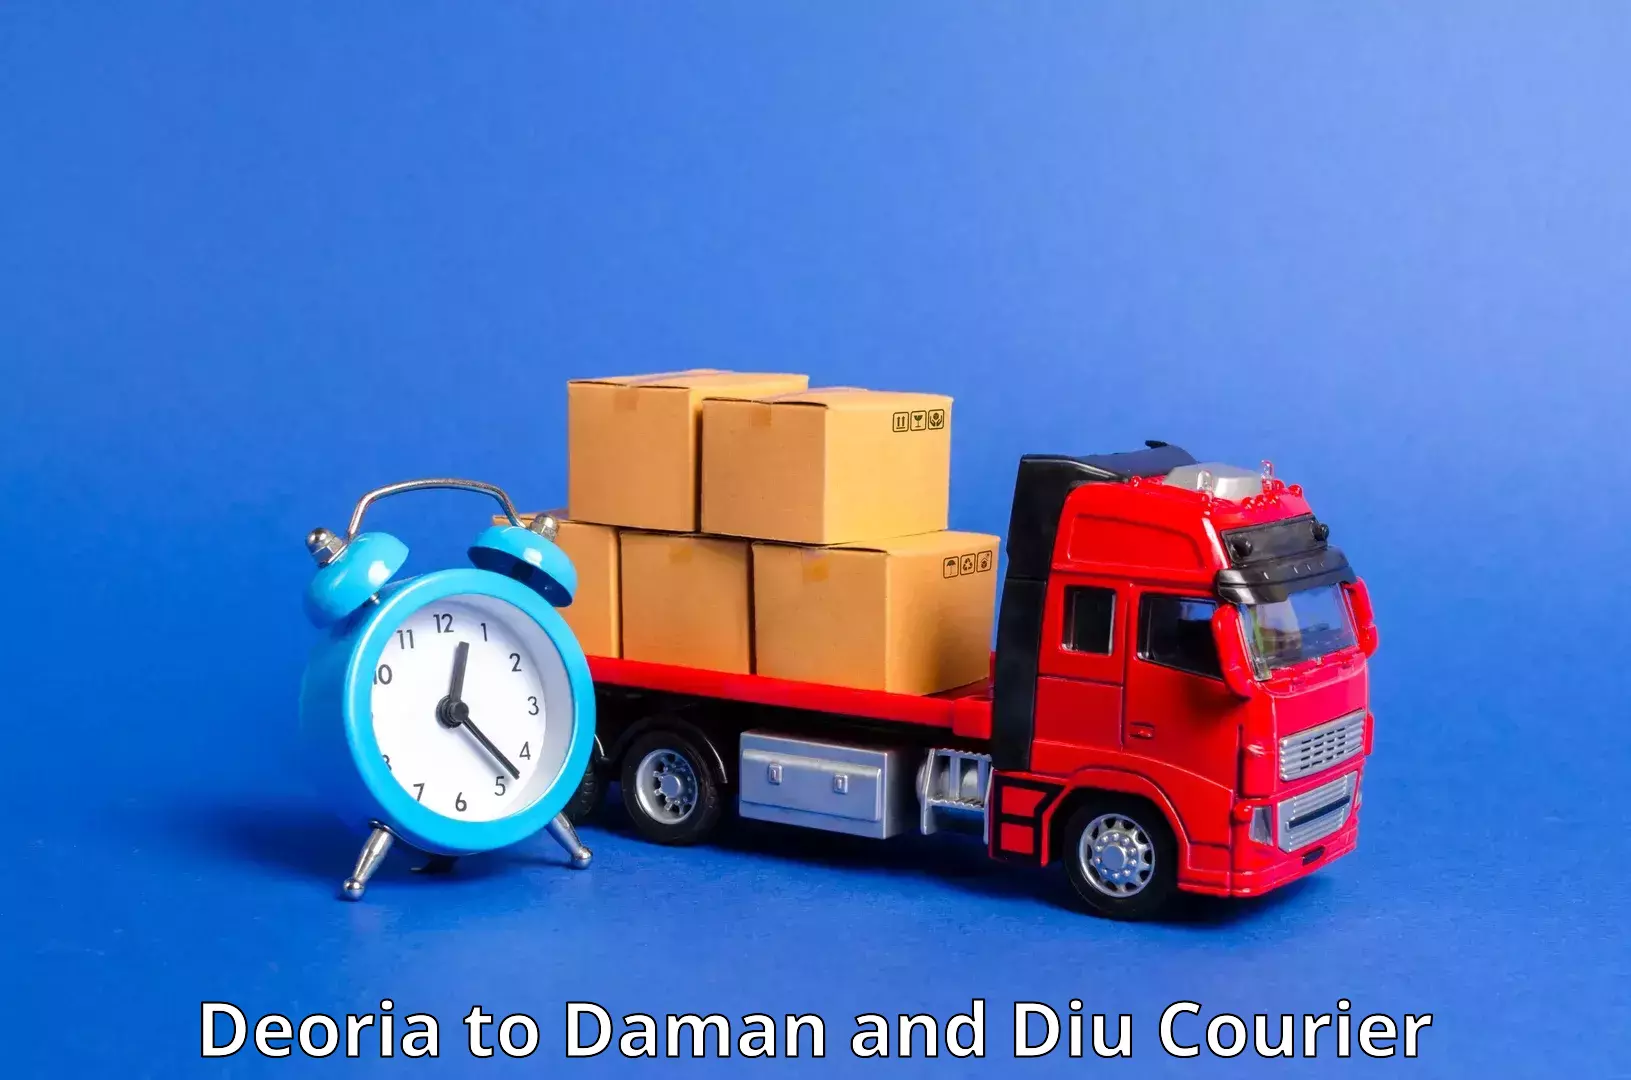 Global logistics network Deoria to Daman and Diu